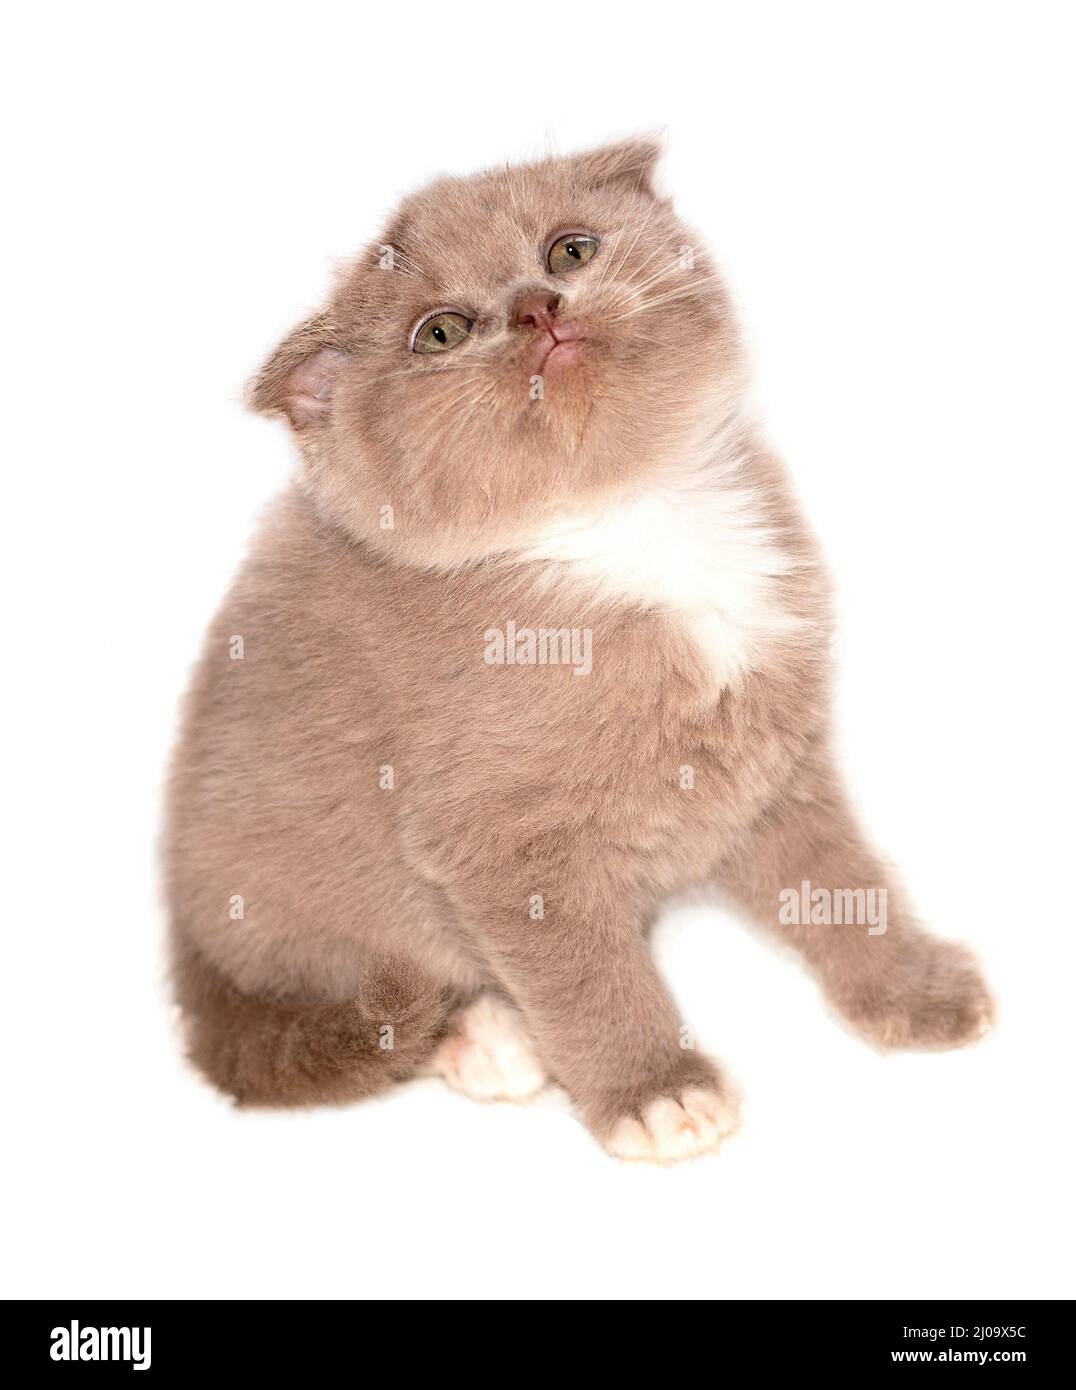 Image isolée d'un chaton lilas écossais, de beaux chatons de race, de chatons dans la maison, d'animaux de compagnie, d'animaux de compagnie Banque D'Images